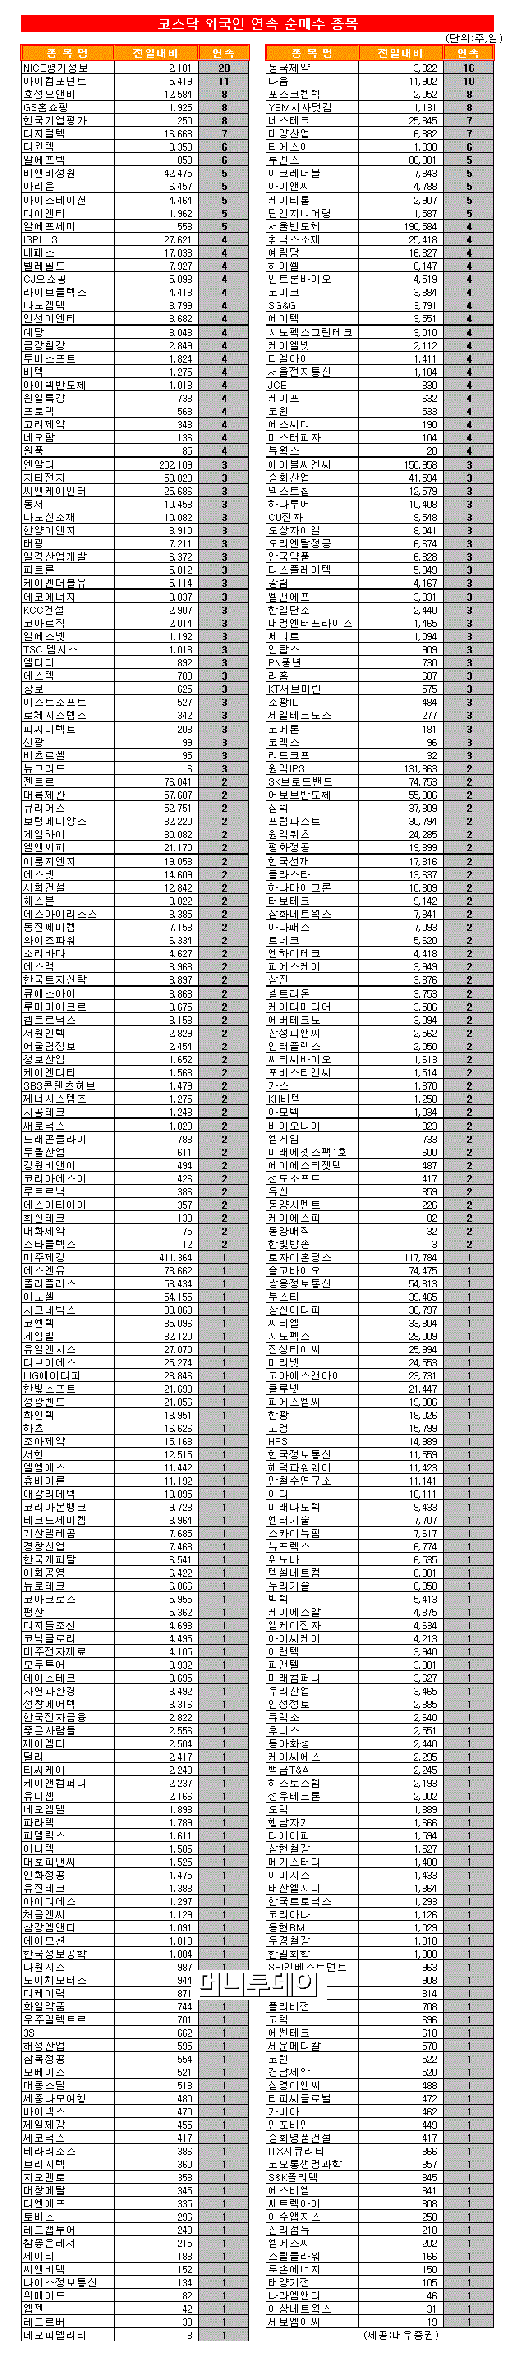 [표]코스닥 외국인 연속 순매수 종목-19일